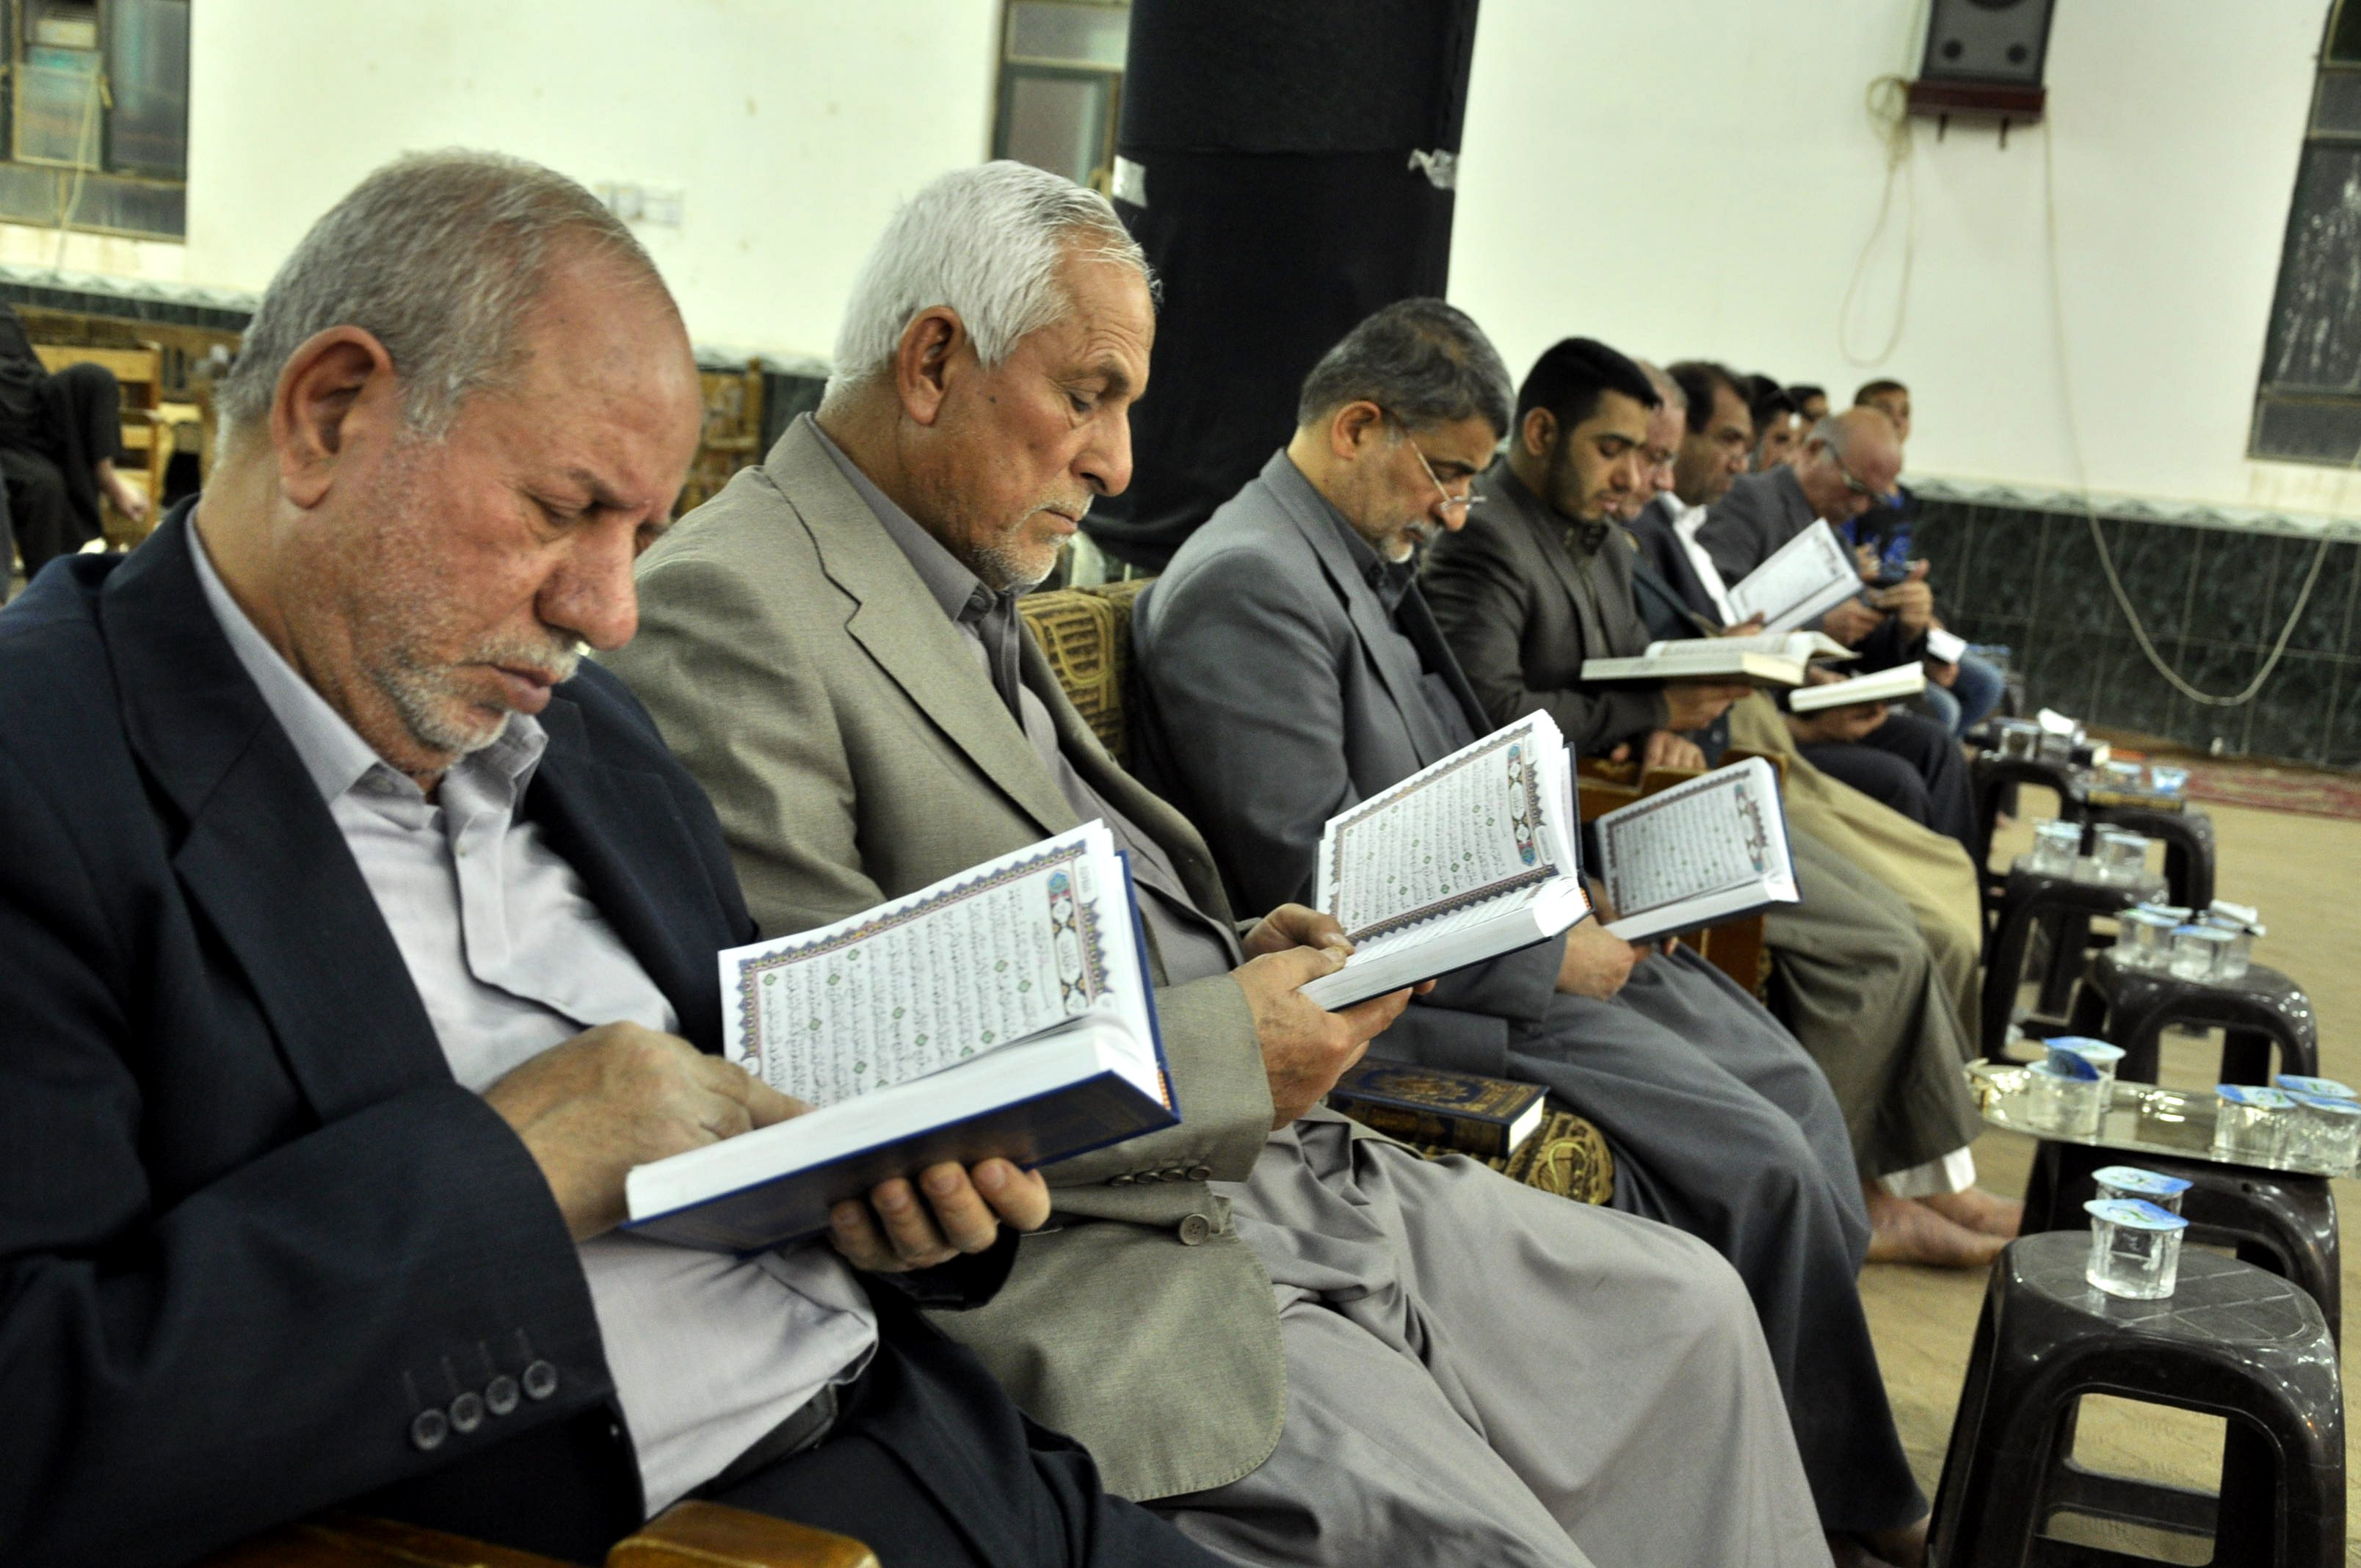 بحضور مميز معهد القرآن الكريم  يبث عبق الكتاب العزيز في قضاء الشامية بمحافظة الديوانية